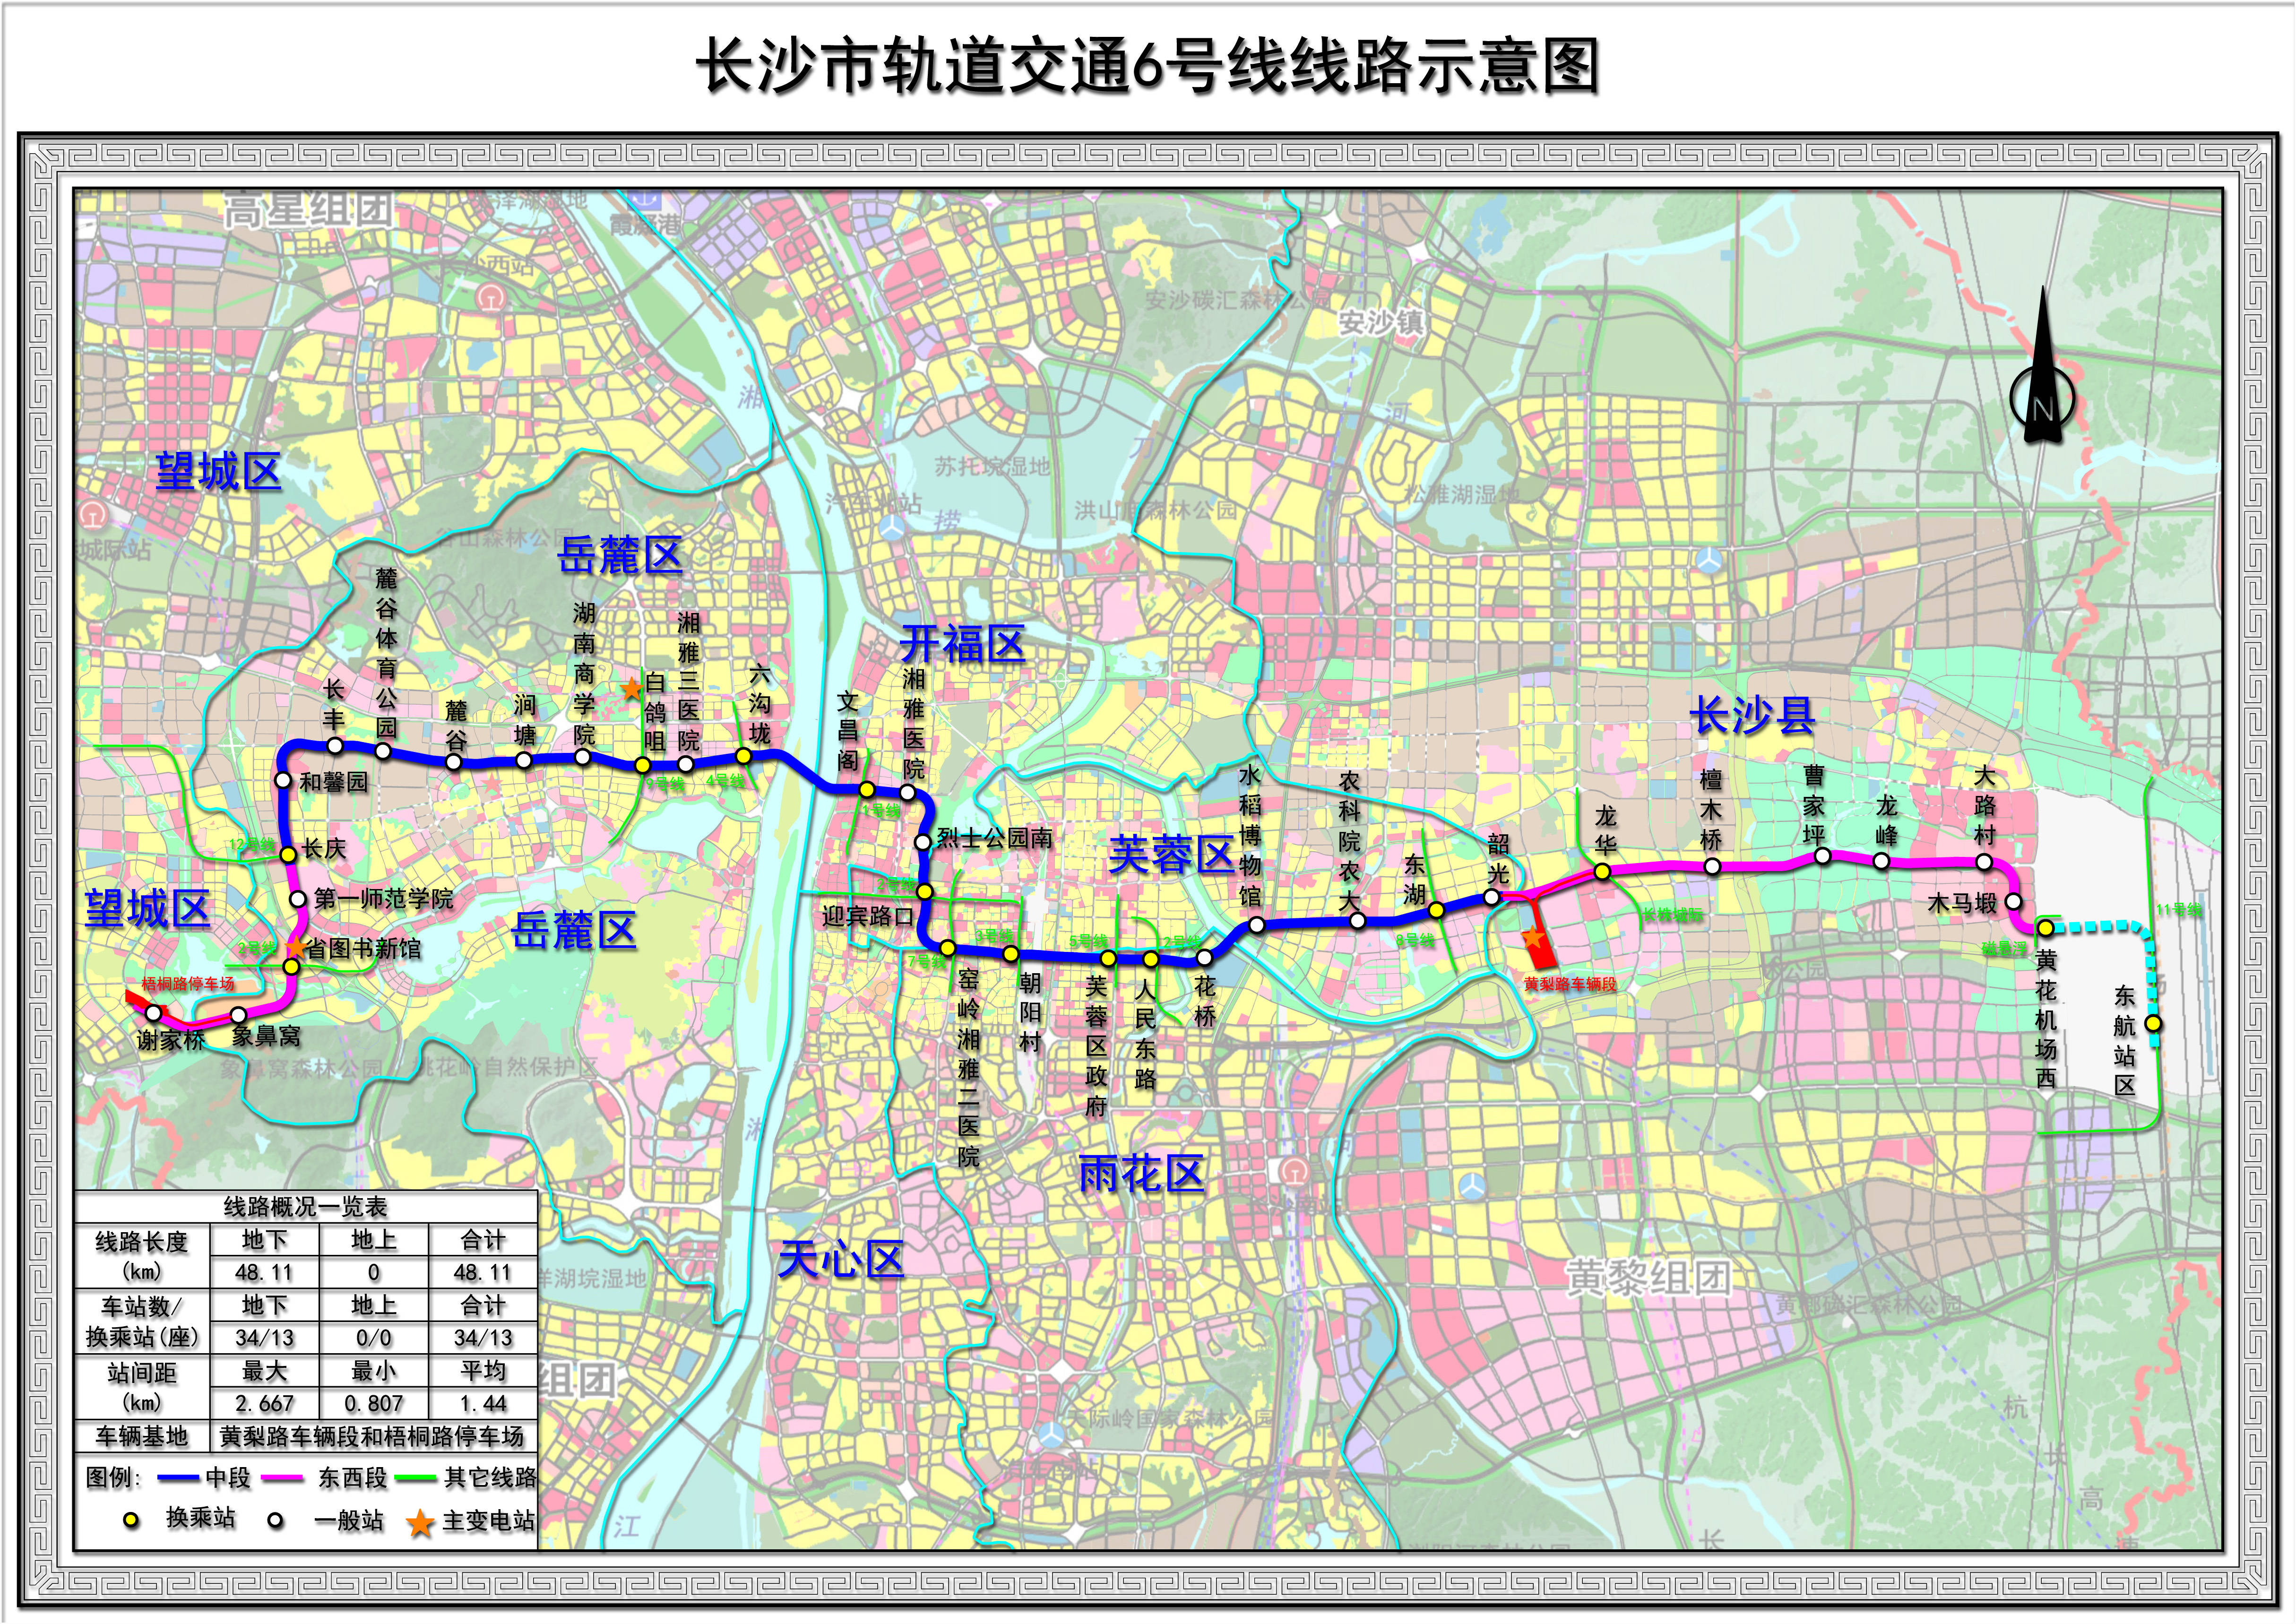 长沙地铁6号线实现轨道贯通,广州地铁出了大力!